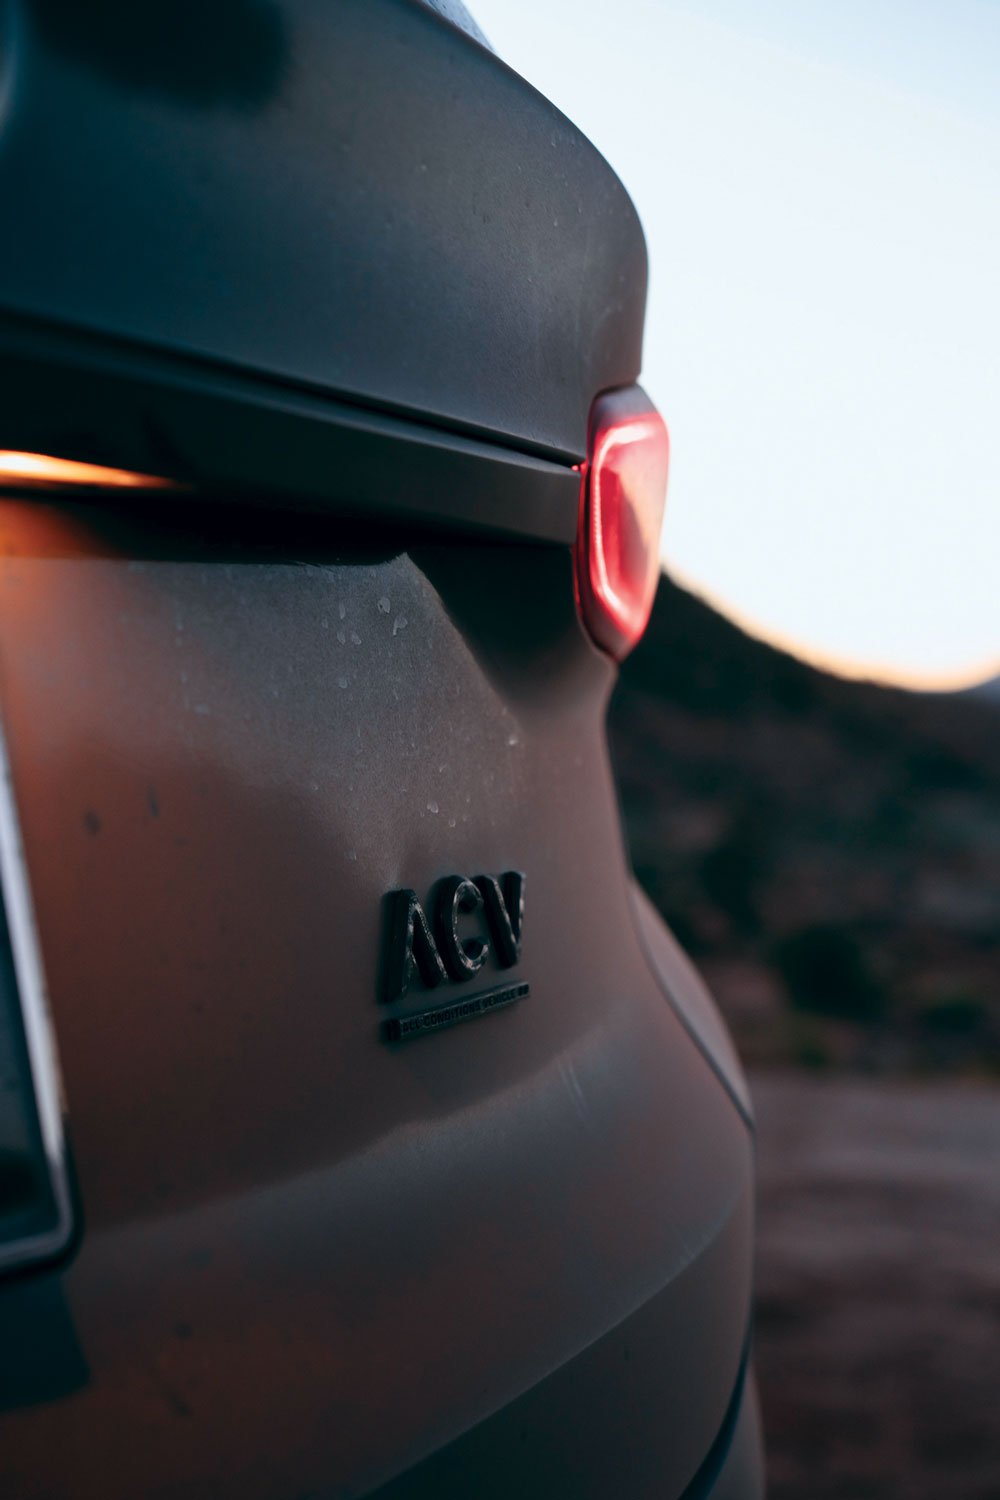 Hyundai Santa Fe badged as the ACV (All-Conditions Vehicle)